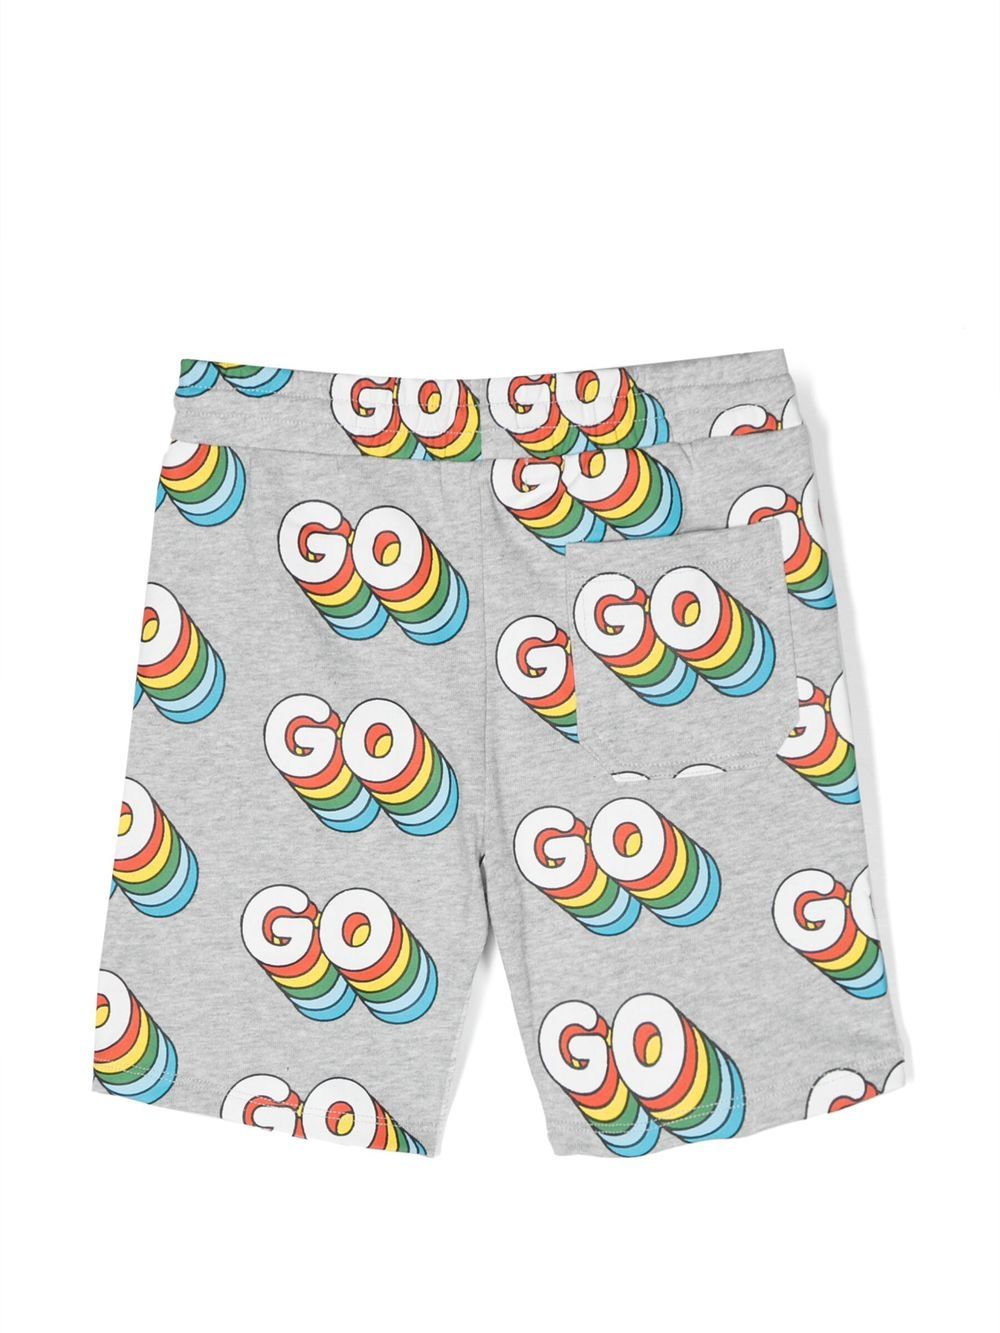 Shorts "GO GO GO"